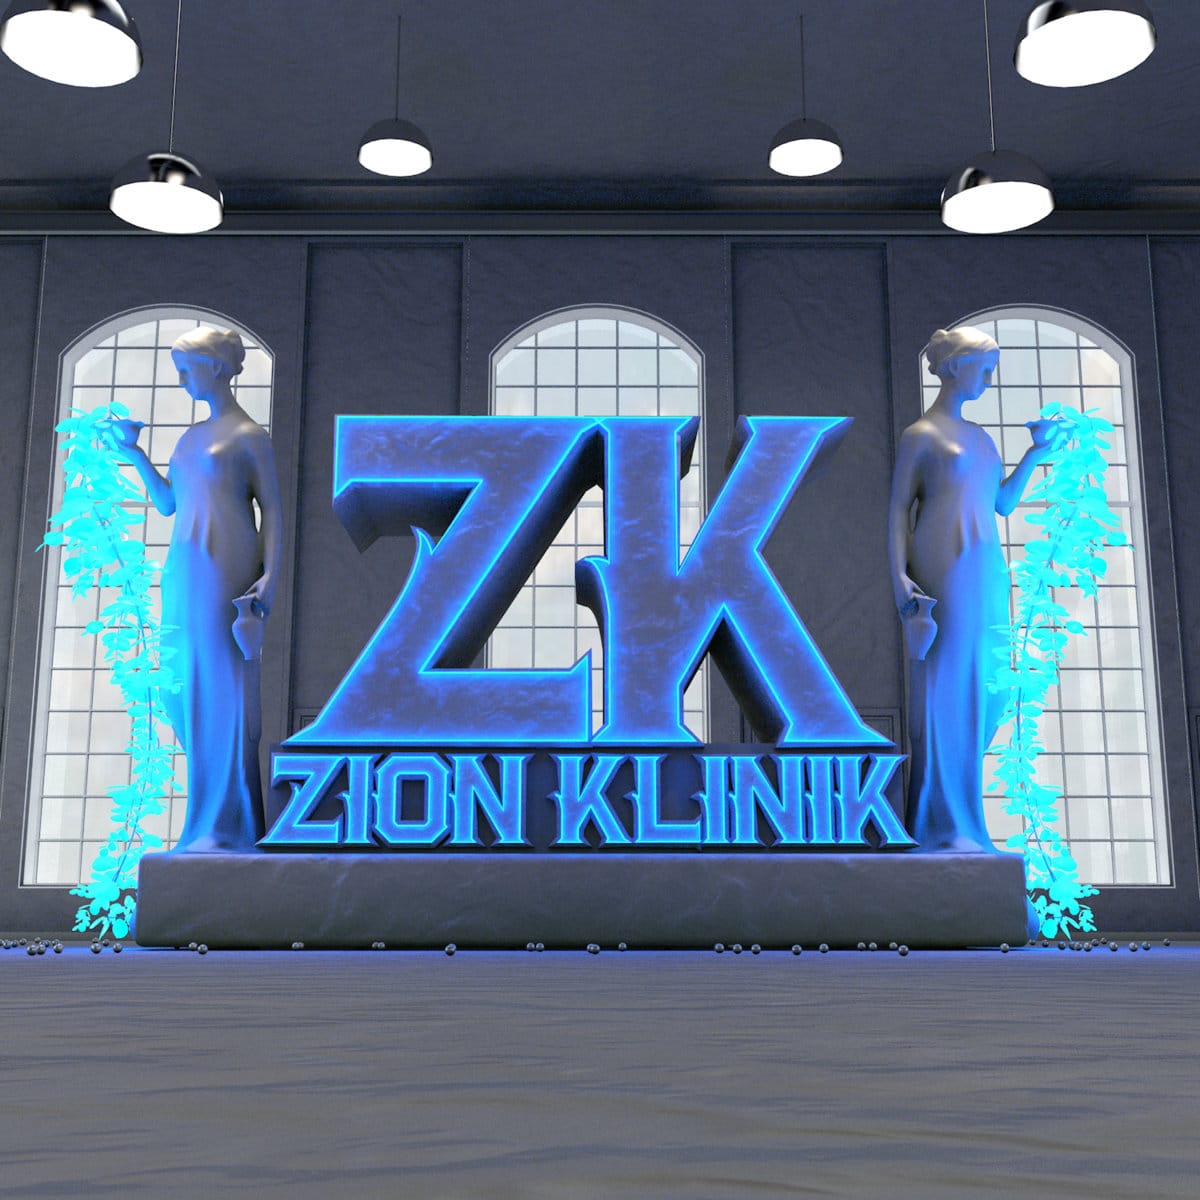 Zion Se7en & The Mefadone Klinik - "The Zion Klinik" (Release)